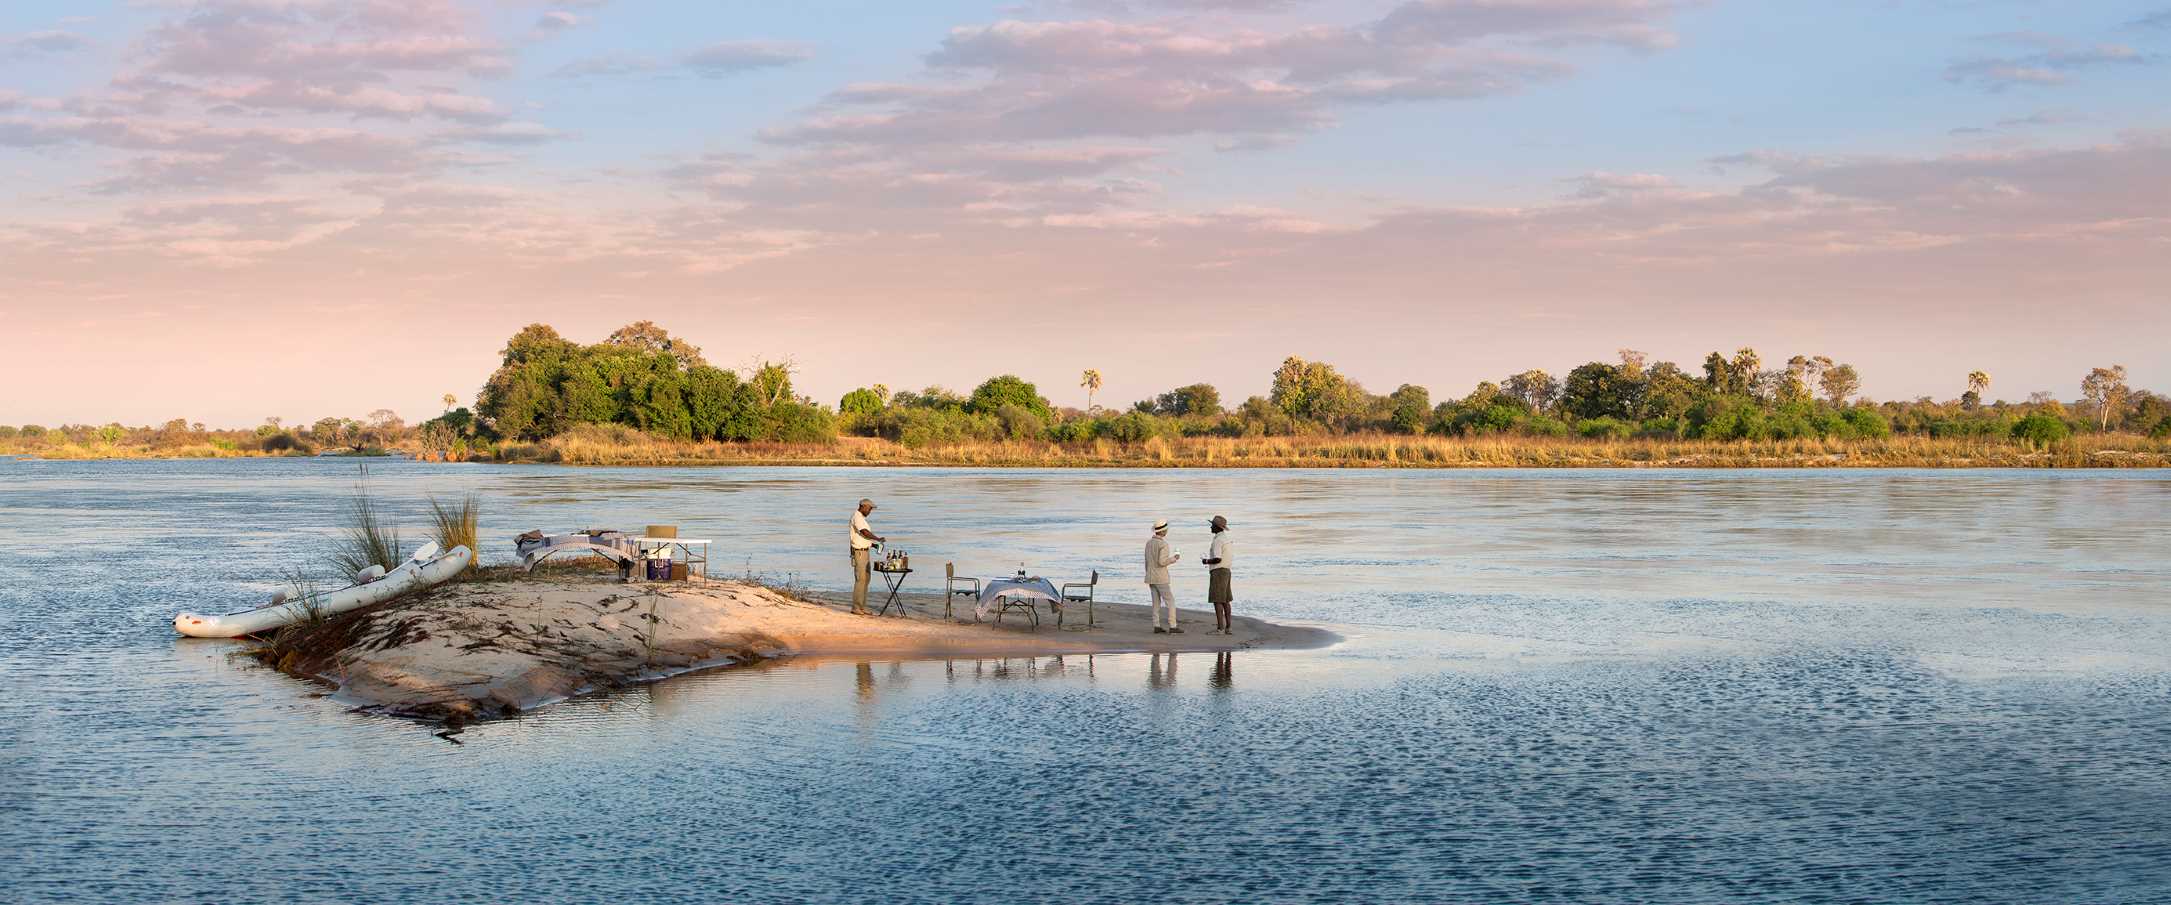 Picknicken op een zandbank in de Zambezi rivier tijdens deze drie landen safari